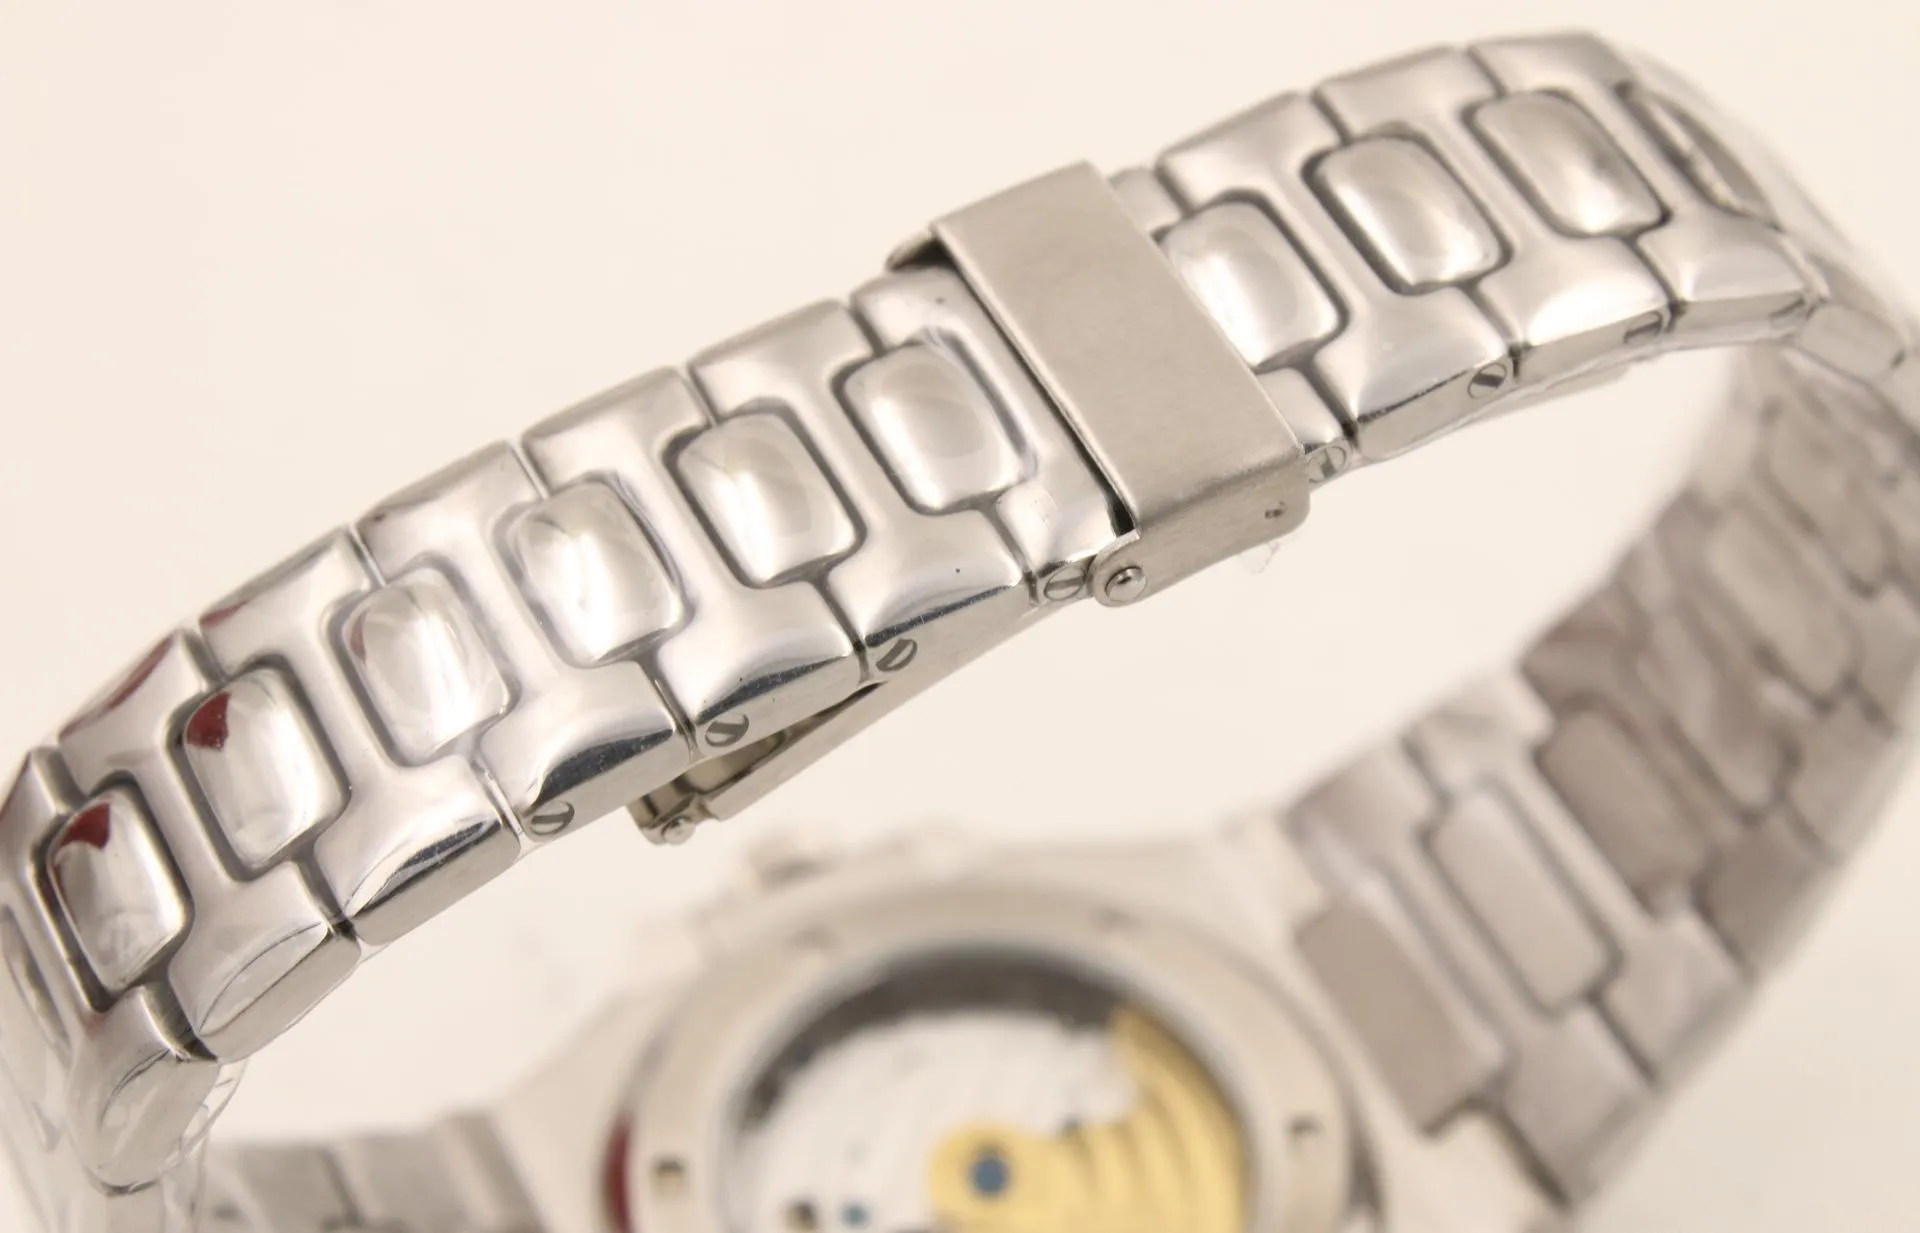 2018 tophorloge horloges automatisch uurwerk roestvrijstalen polshorloge PP05 herenhorloges kerstcadeaus195b